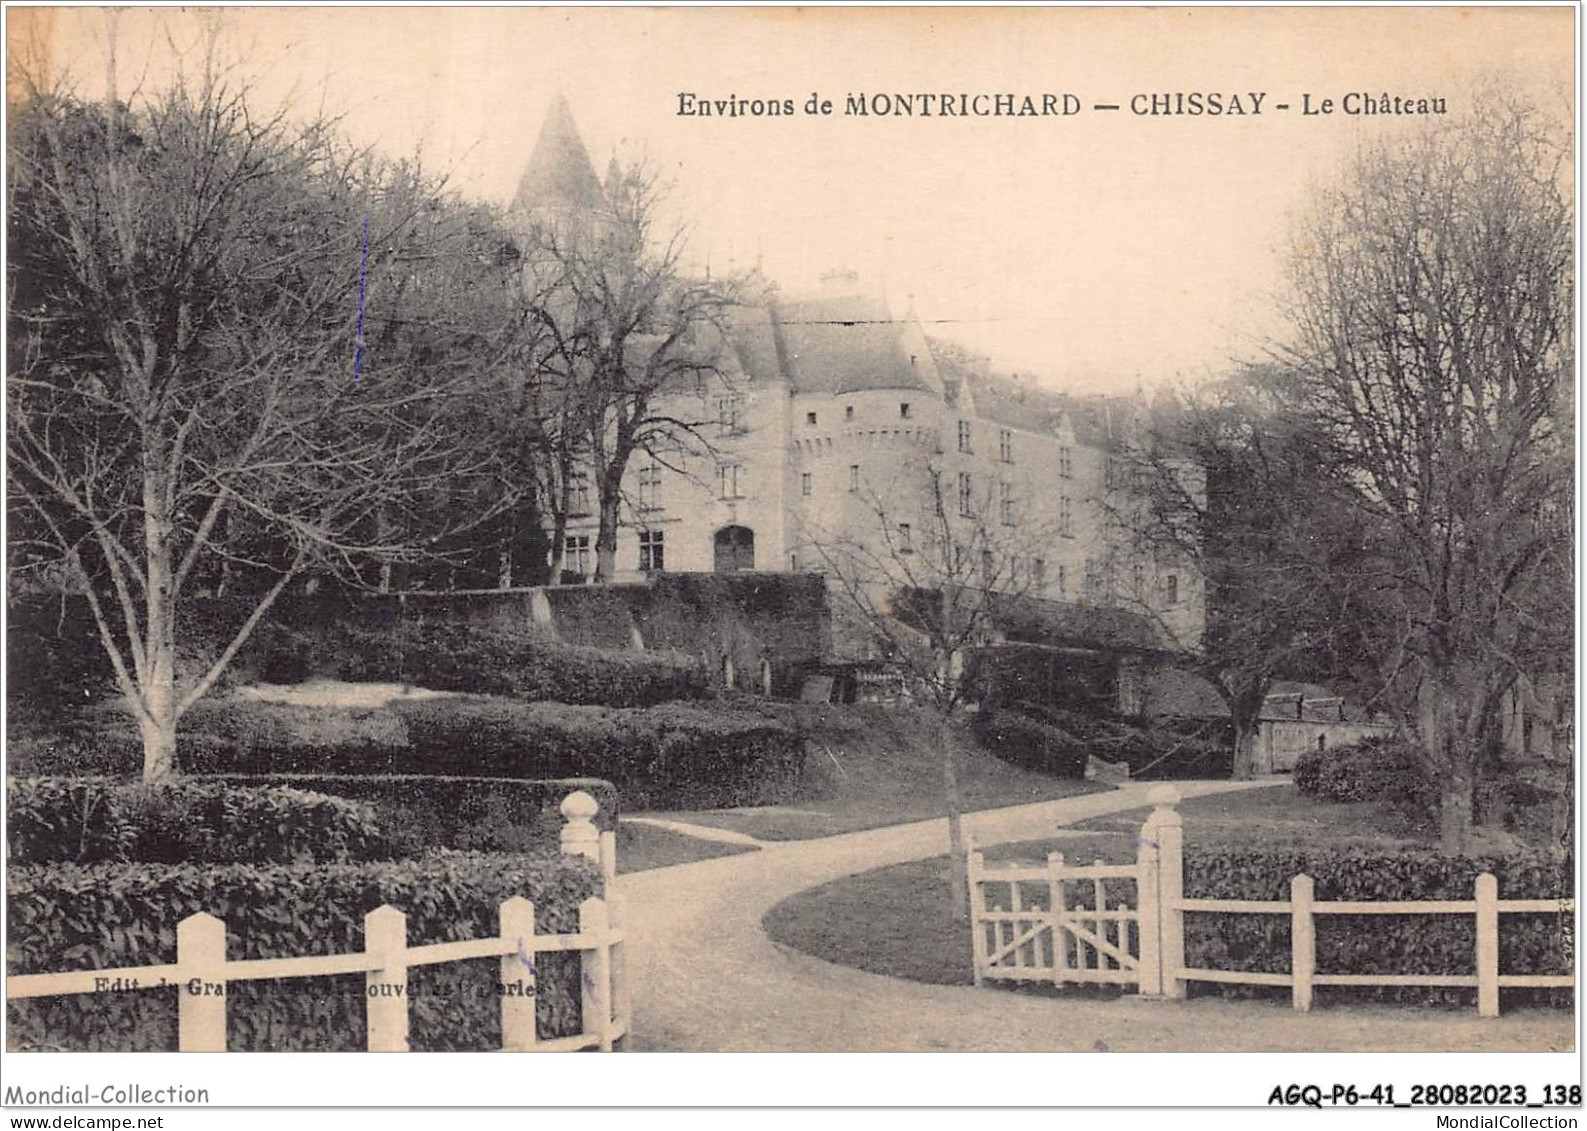 AGQP6-0454-41 - ENVIRONS DE MONTRICHARD - CHISSAY - Le Chateau - Montrichard